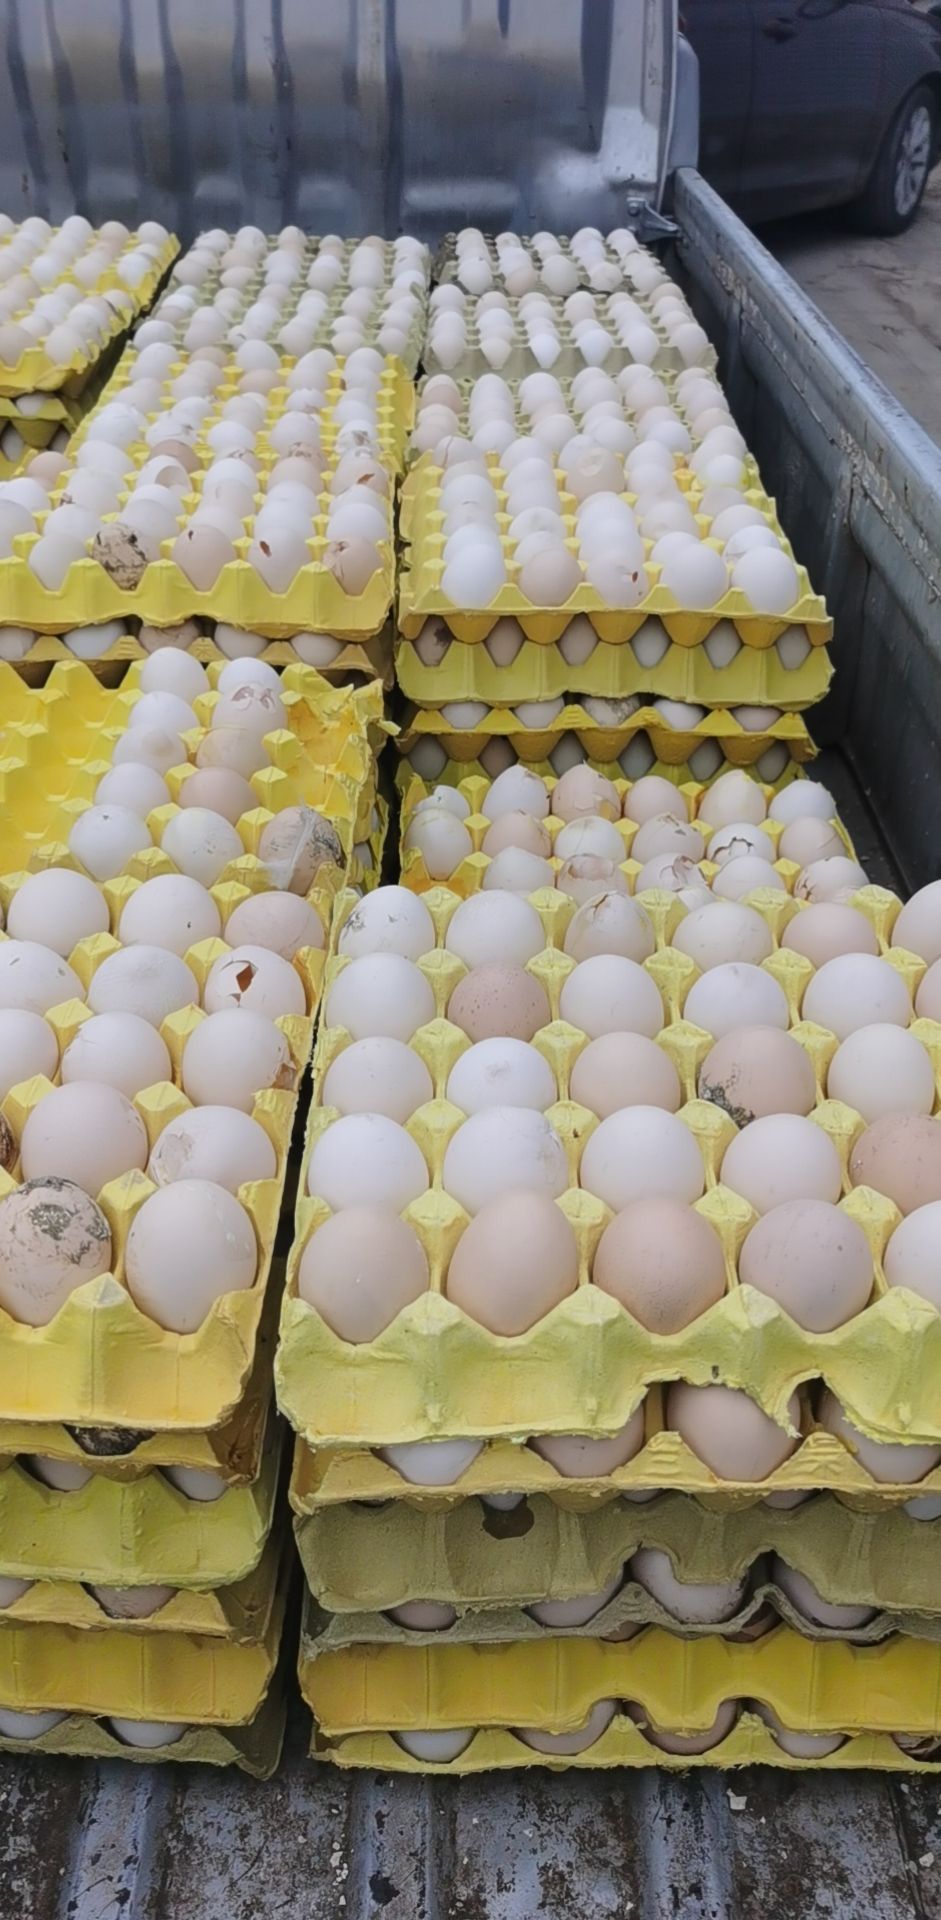 [粉壳蛋批发]粉壳蛋 沙壳蛋,粪蛋,畸形蛋,价格28元/斤 